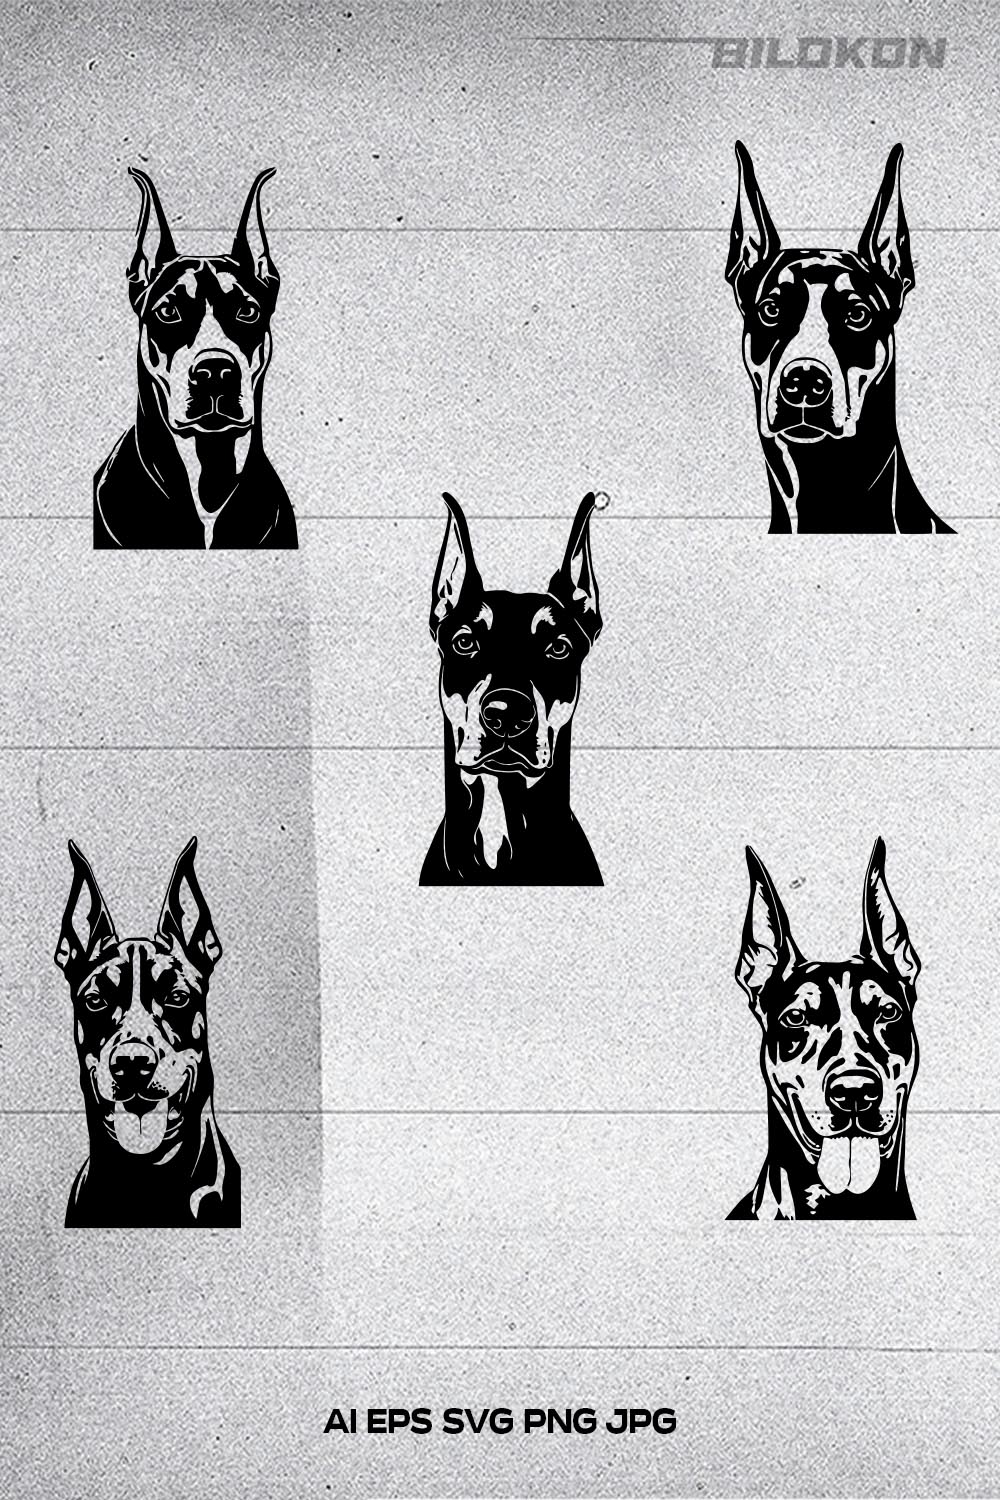 Doberman head dog Vector illustration, SVG Bundle pinterest preview image.